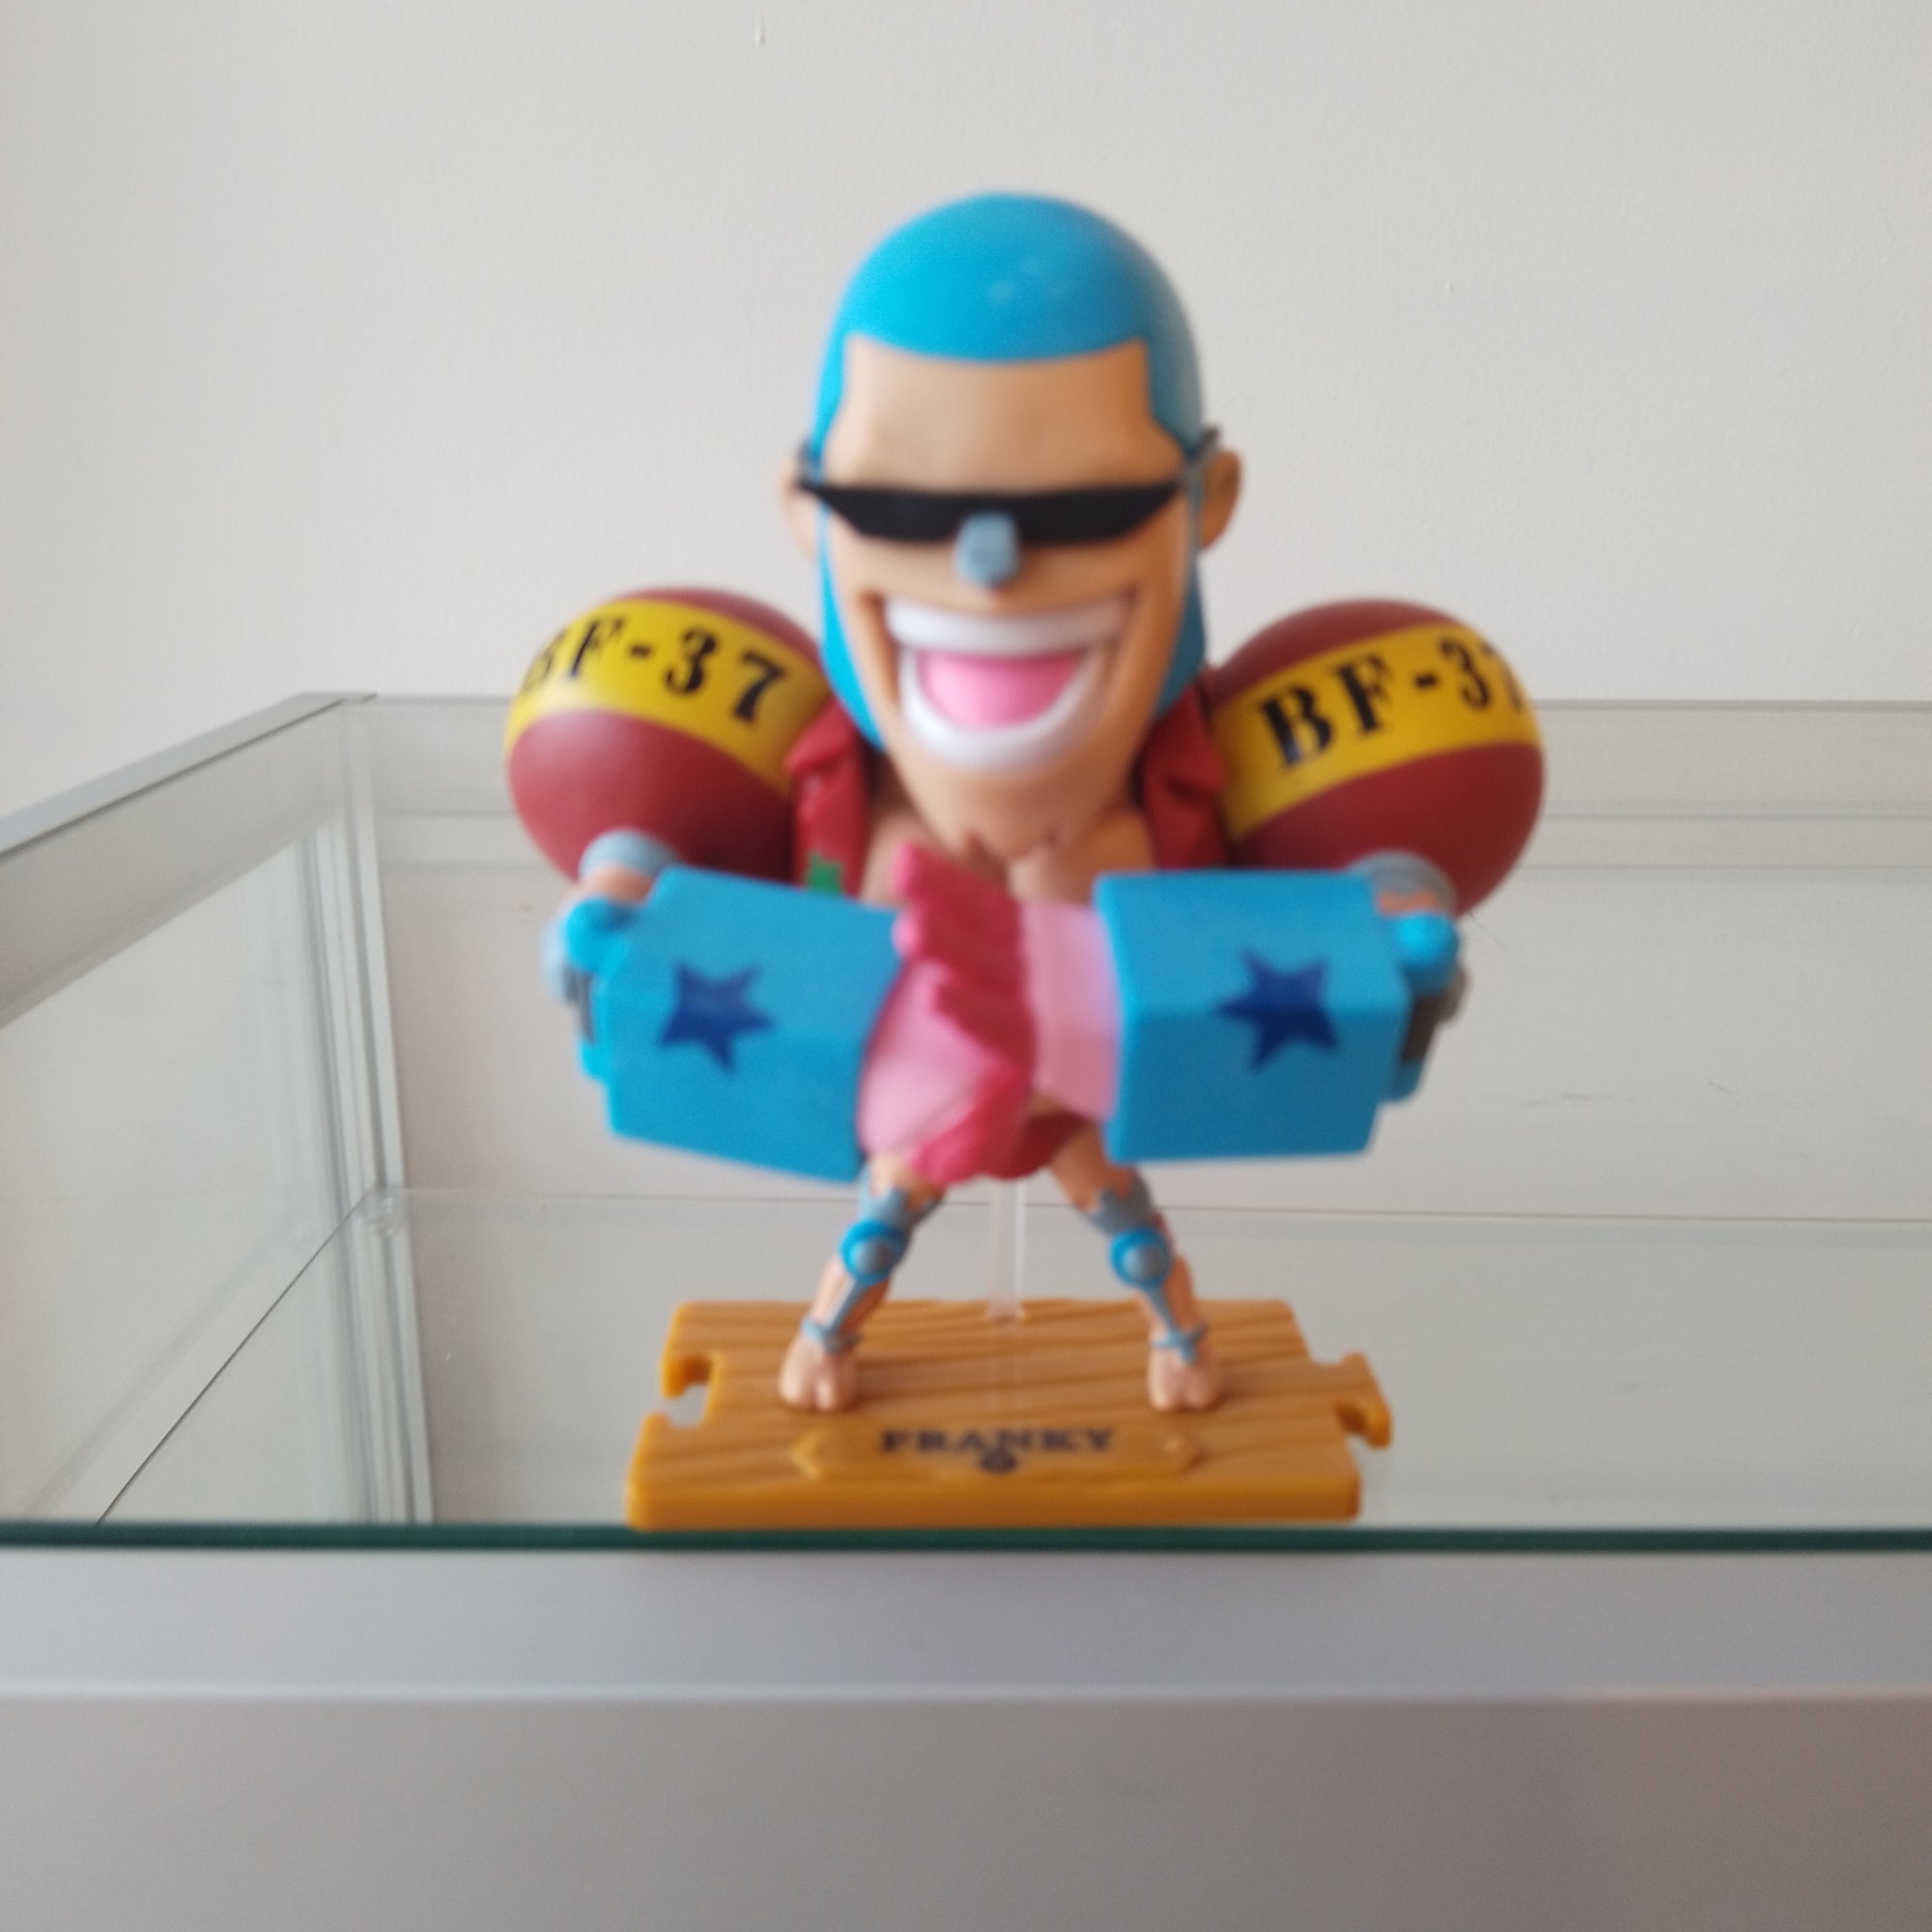 Franky - One Piece Toy Figure